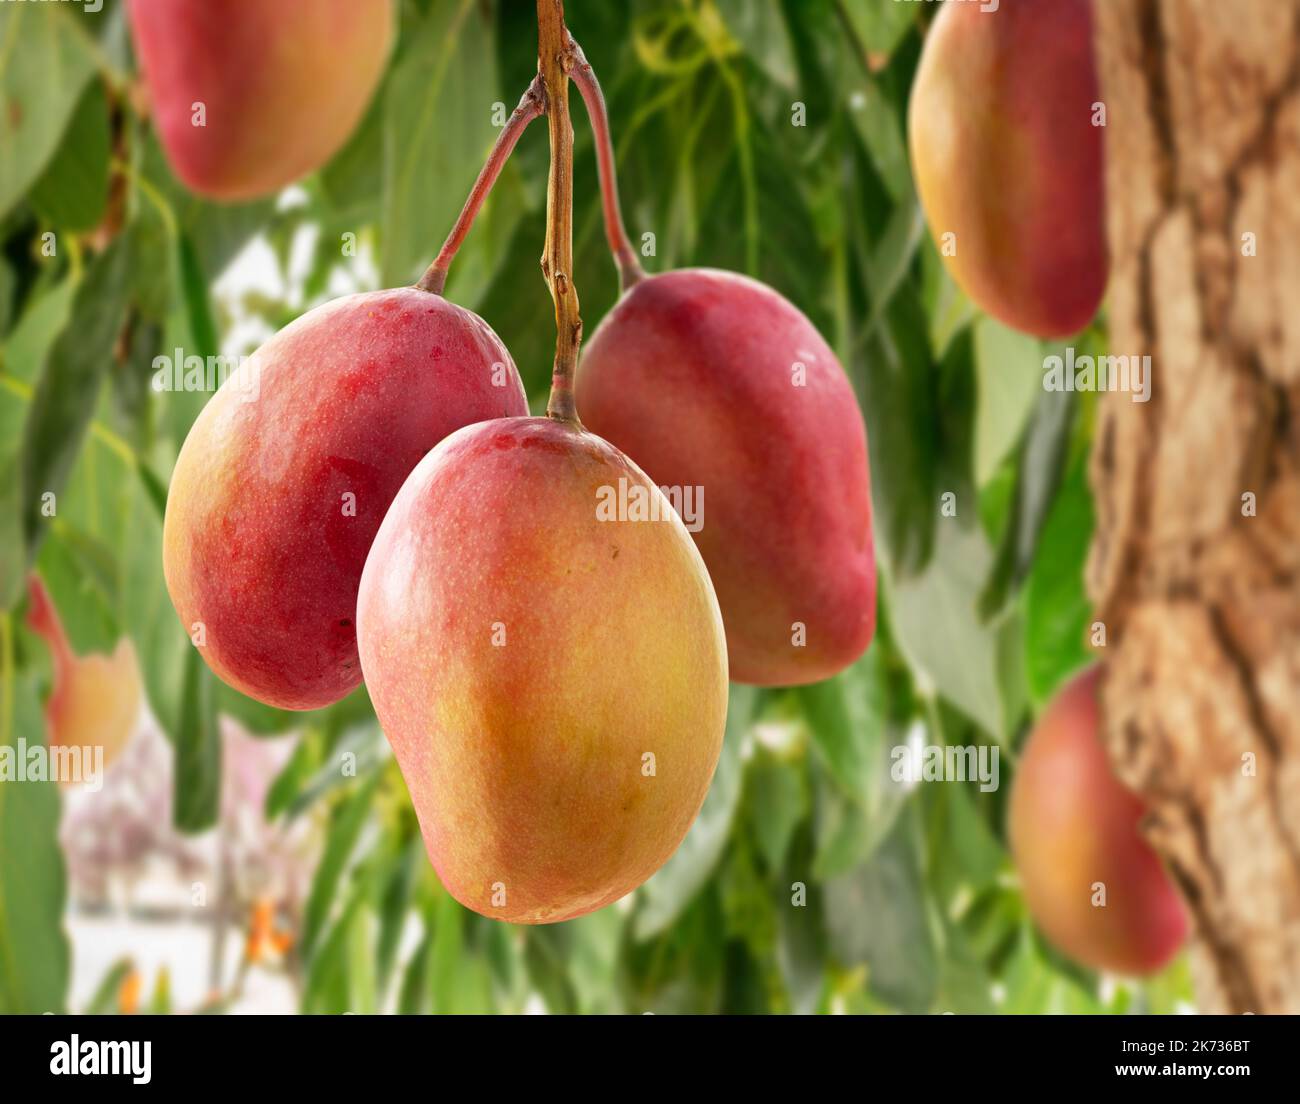 Ripe mango fruits on mango tree. Green foliage at the background. Stock Photo